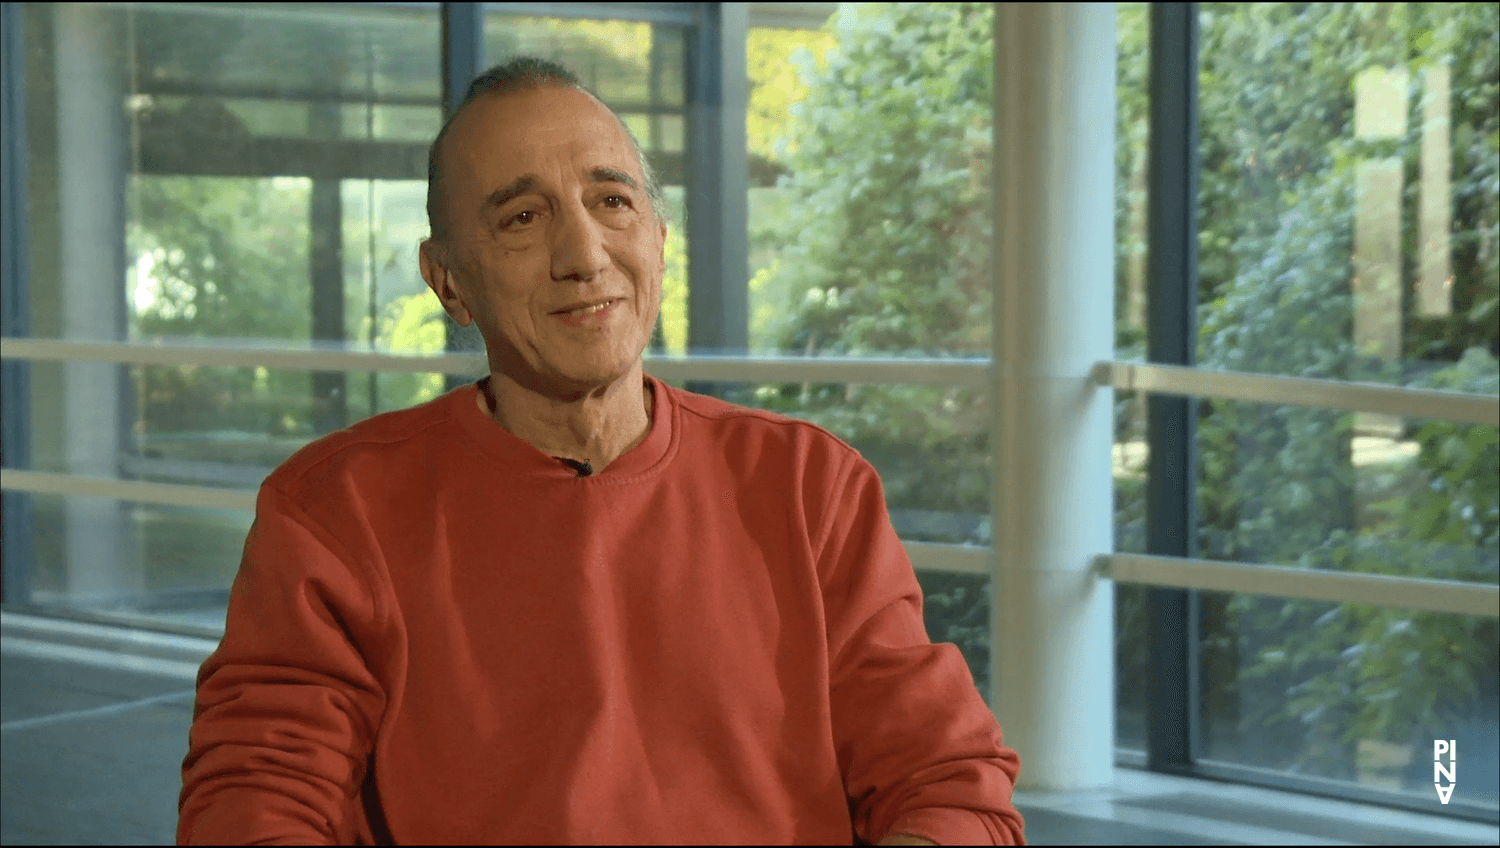 Interview with Jean Laurent Sasportes, 5/10/2018